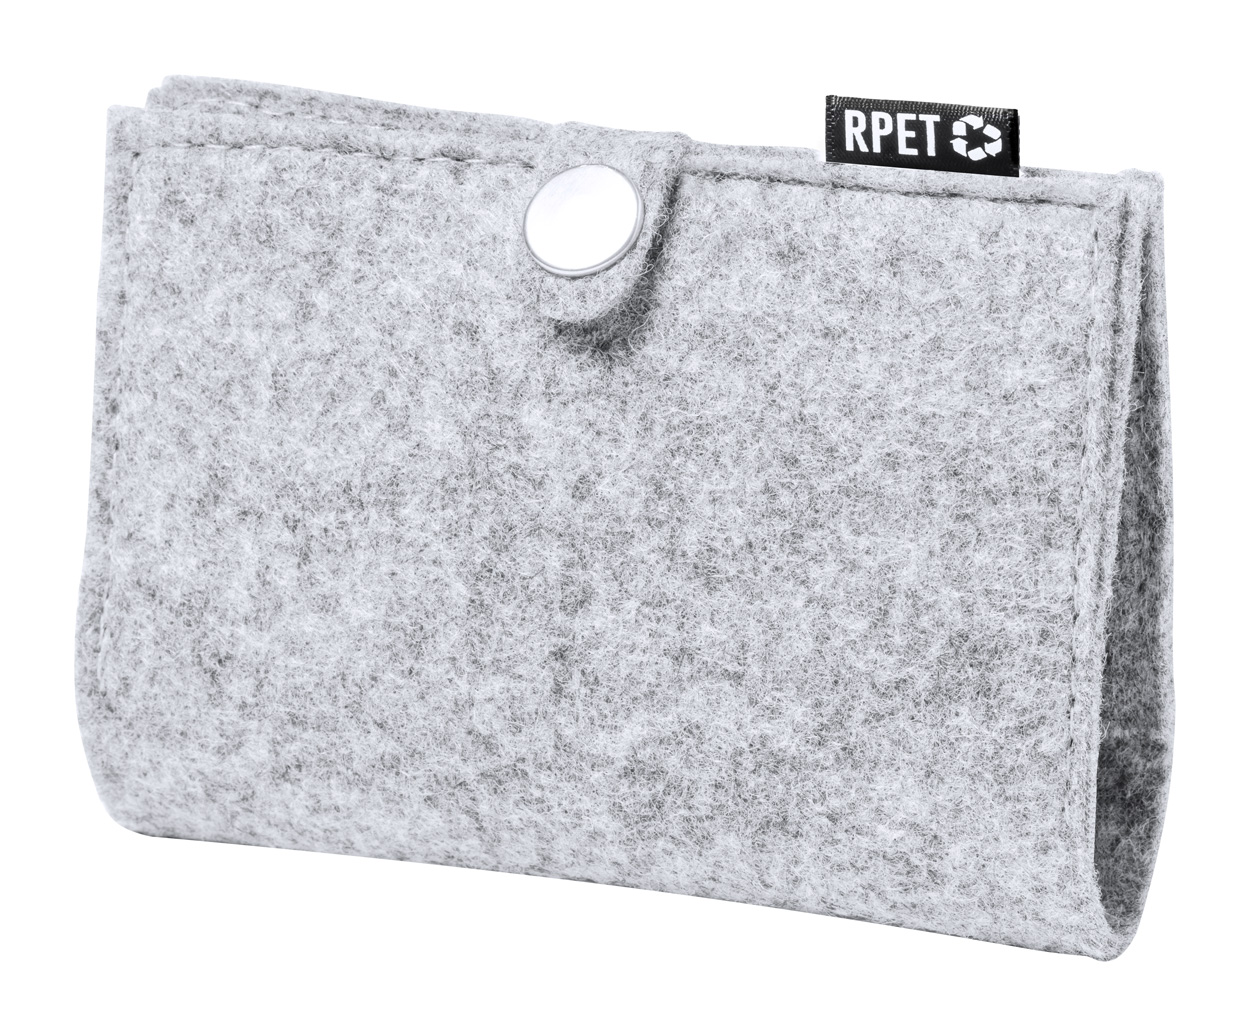 Mercel RPET card case - grey